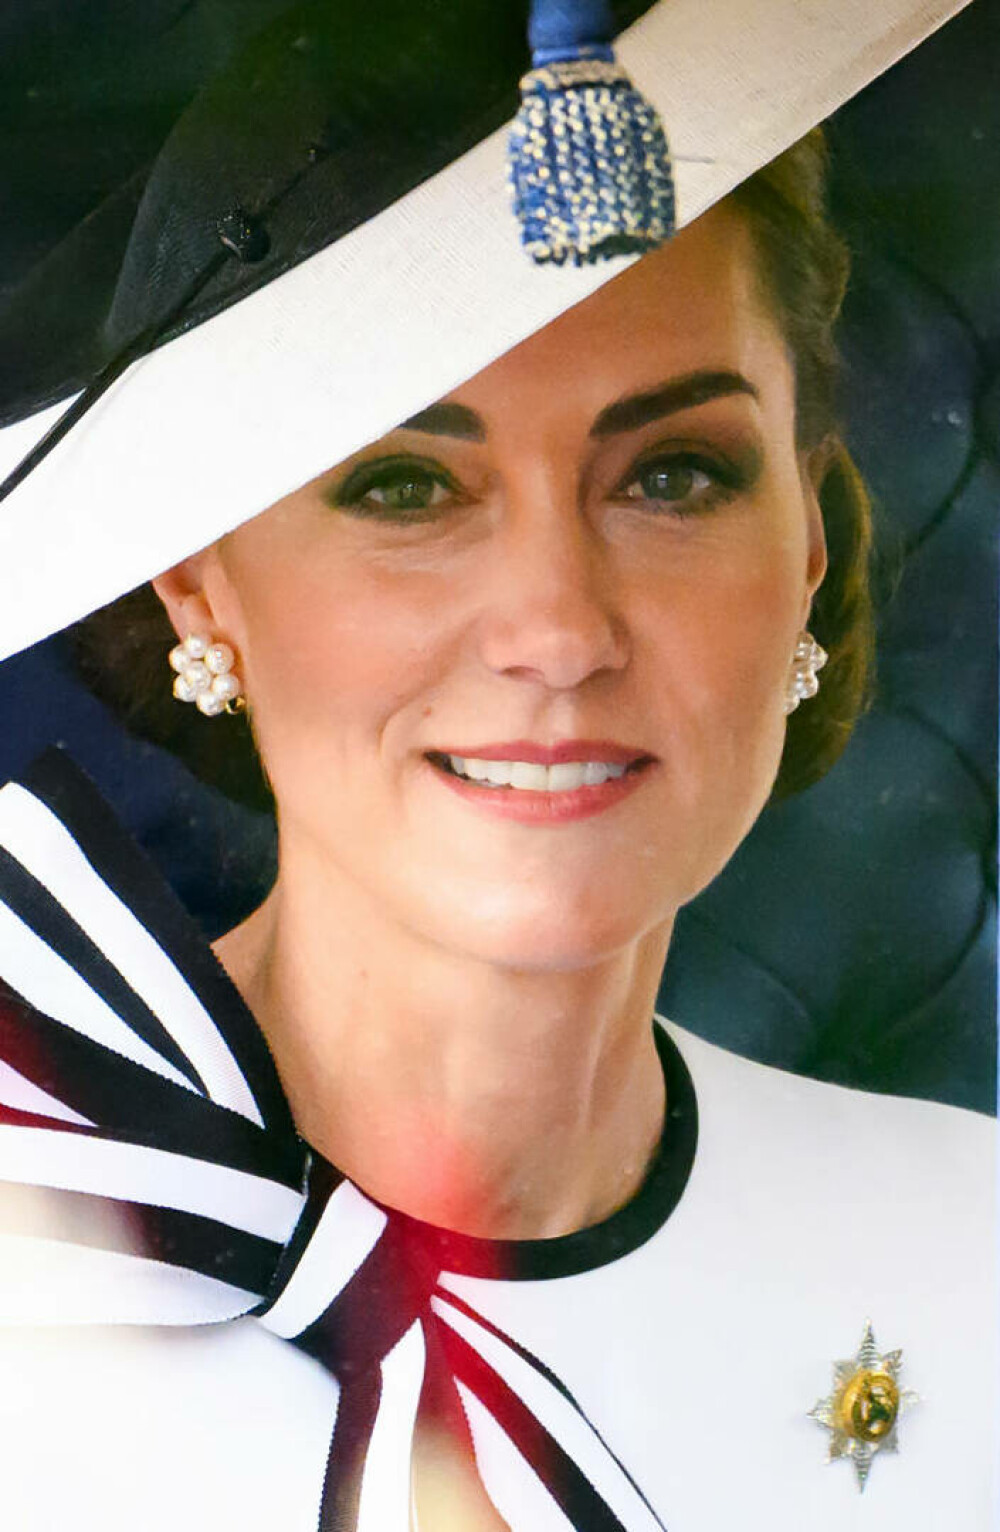 Detalii nevăzute de la prima apariție a prințesei Kate. Ce reprezintă ținuta pe care a purtat-o | FOTO - Imaginea 15